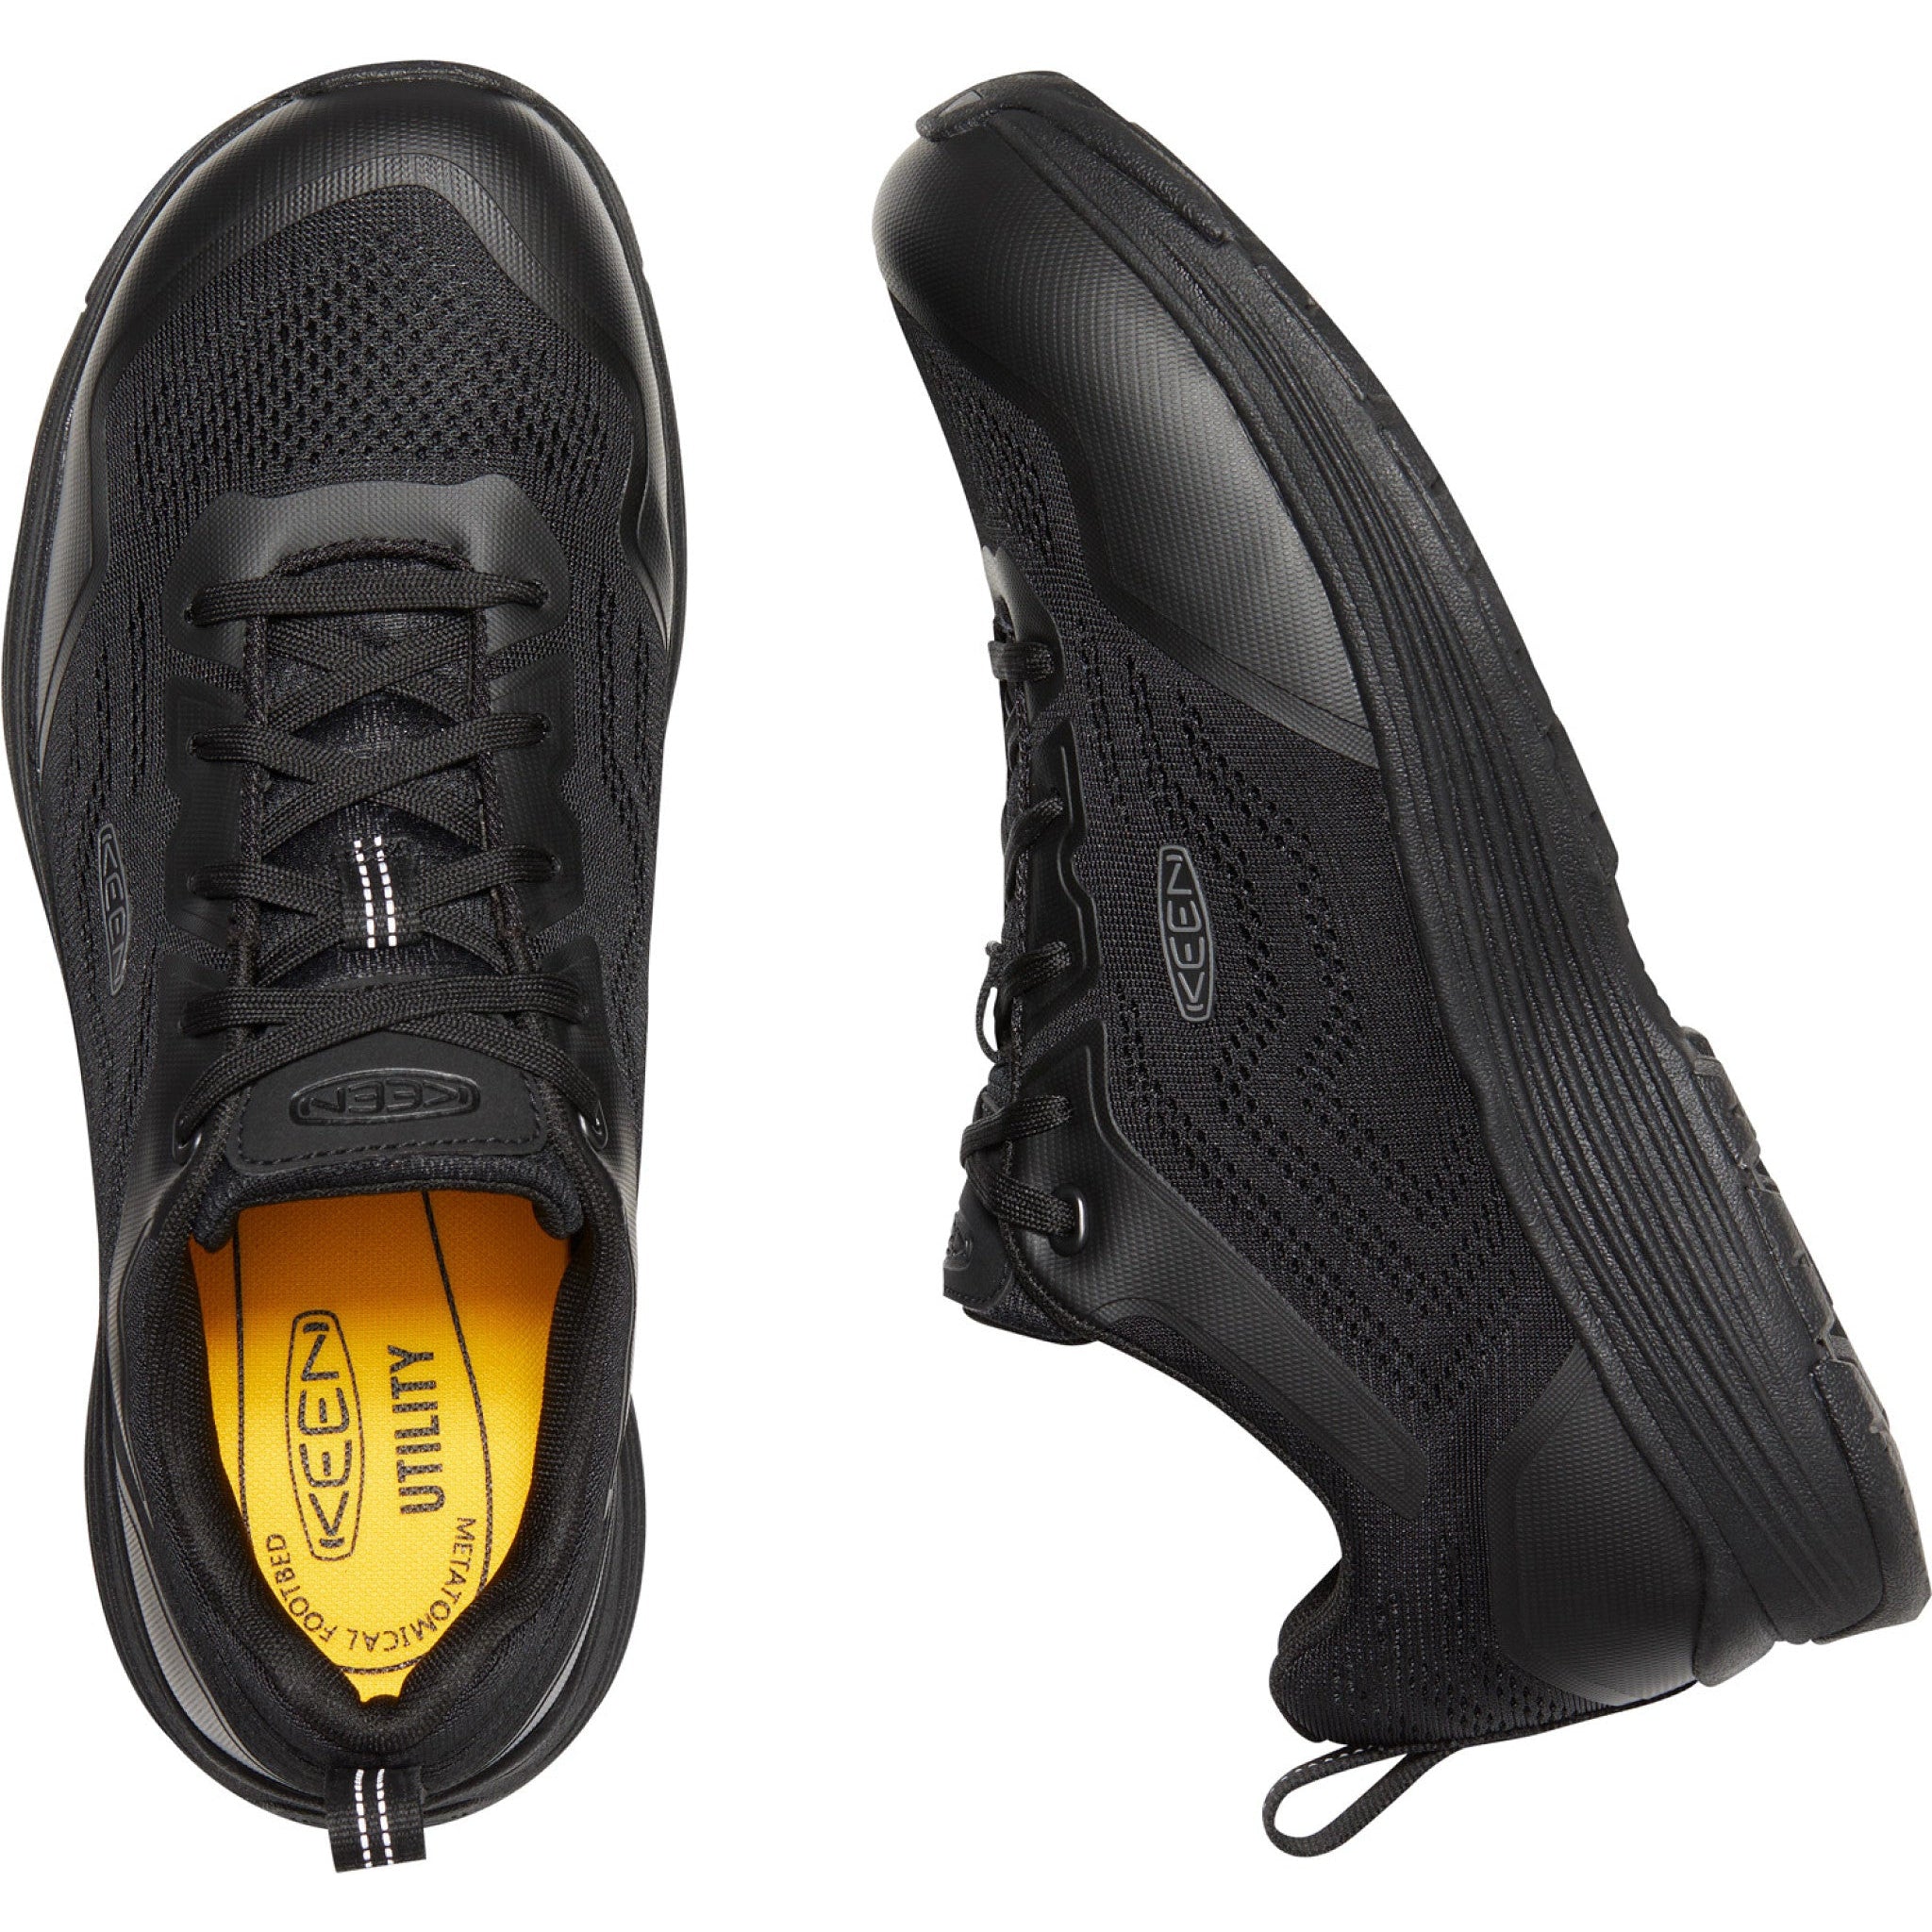 Keen Utility Men's Sparta II Alum Toe Work Shoe - Black - 1025569  - Overlook Boots